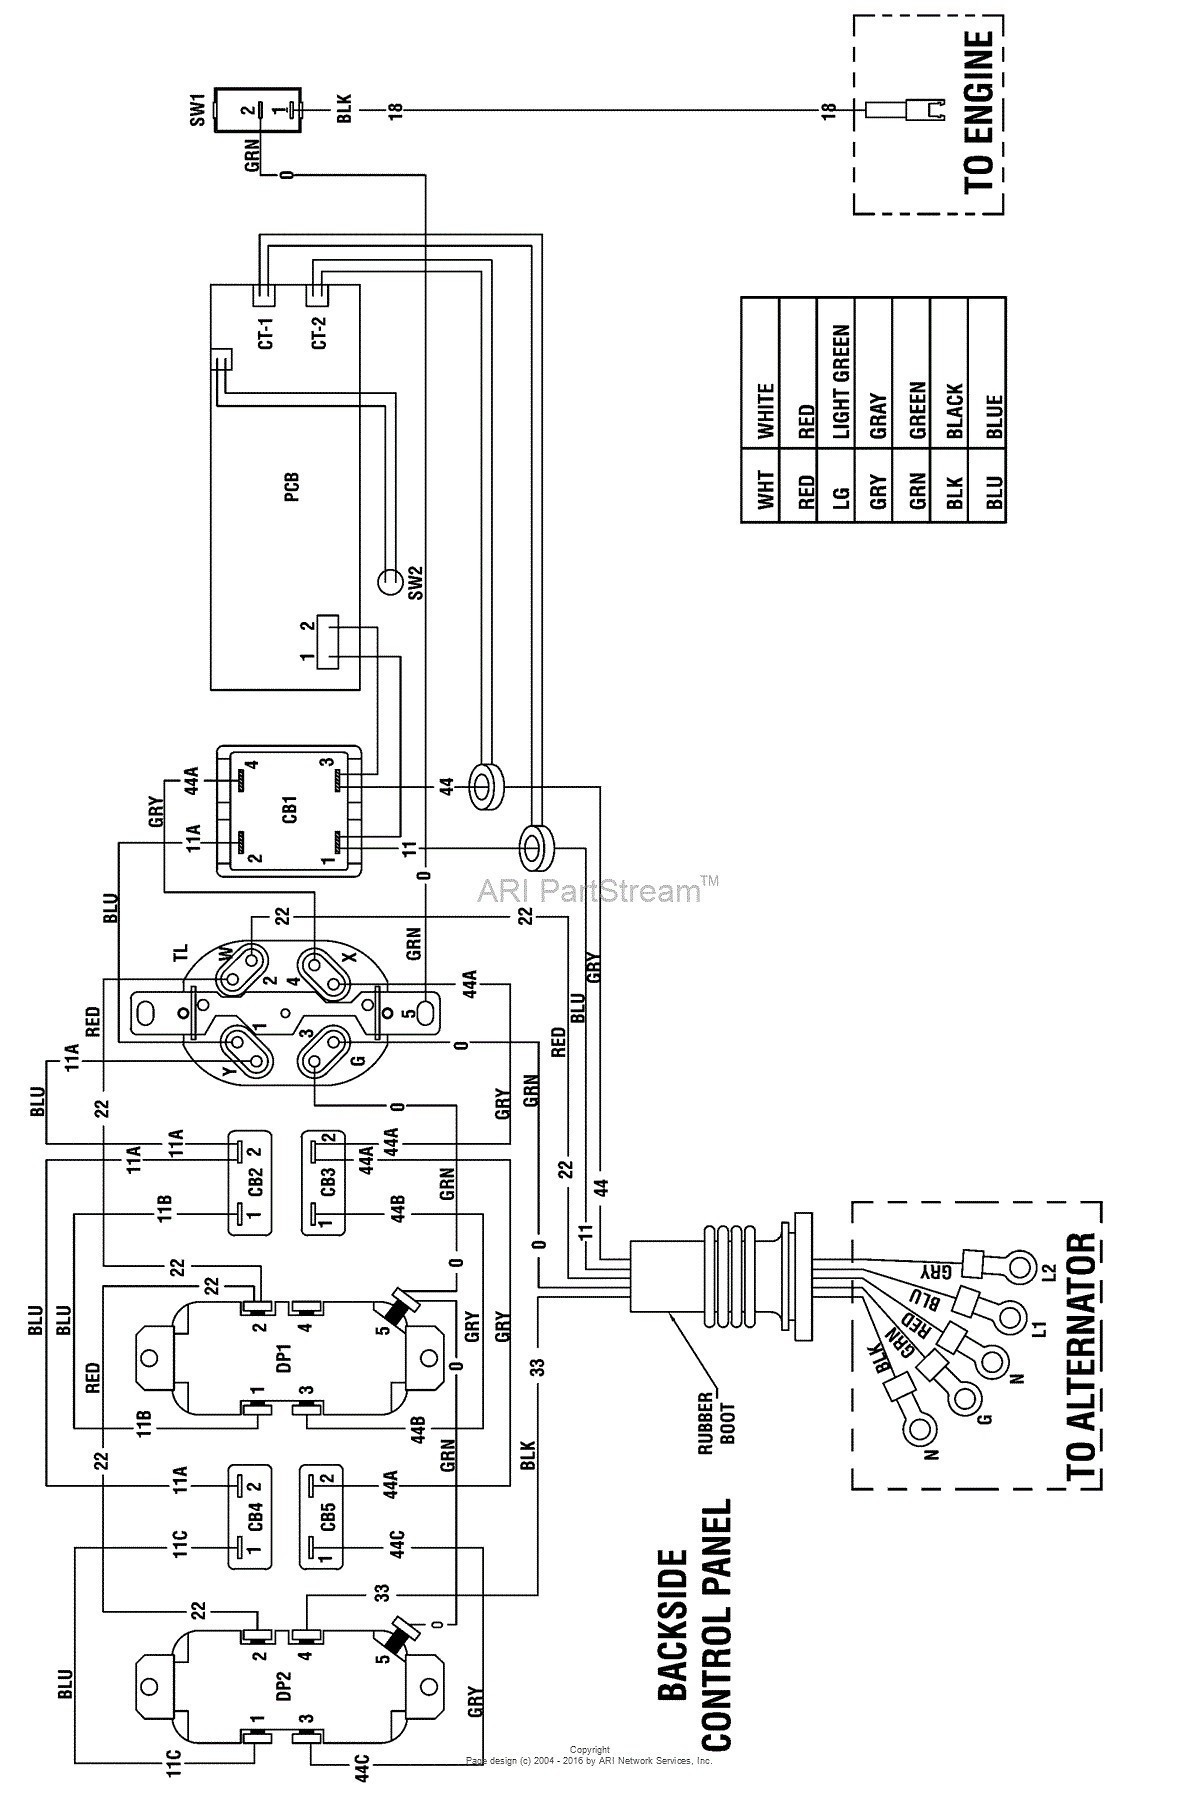 Vdo Oil Pressure Gauge Wiring Schematic Wiring Diagram Oil Pressure 1992 Lumina Of Vdo Oil Pressure Gauge Wiring Schematic